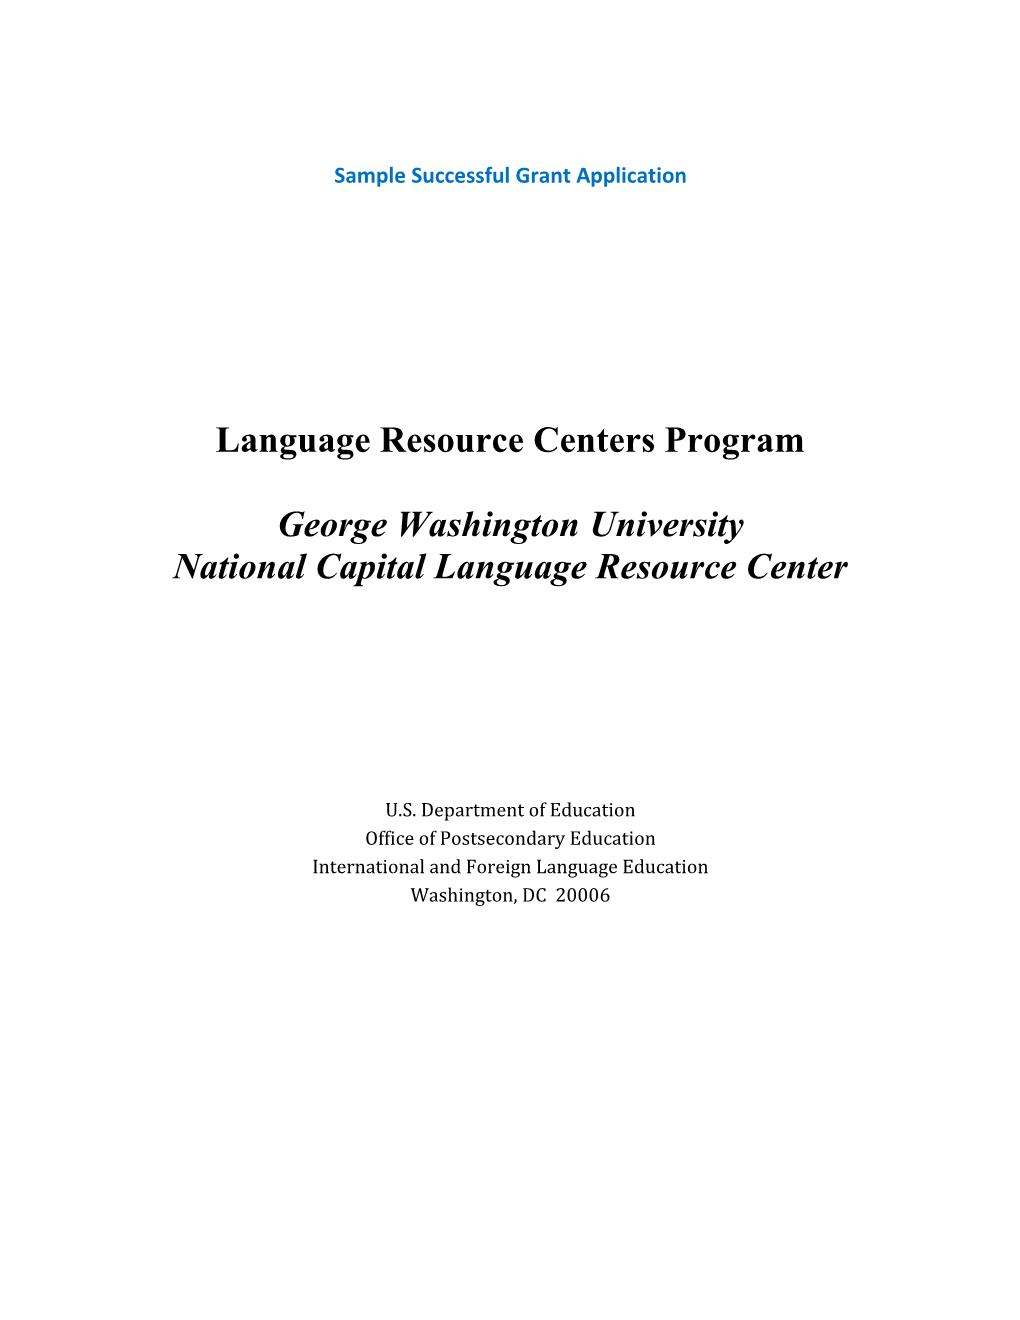 Language Resource Centers Program George Washington University